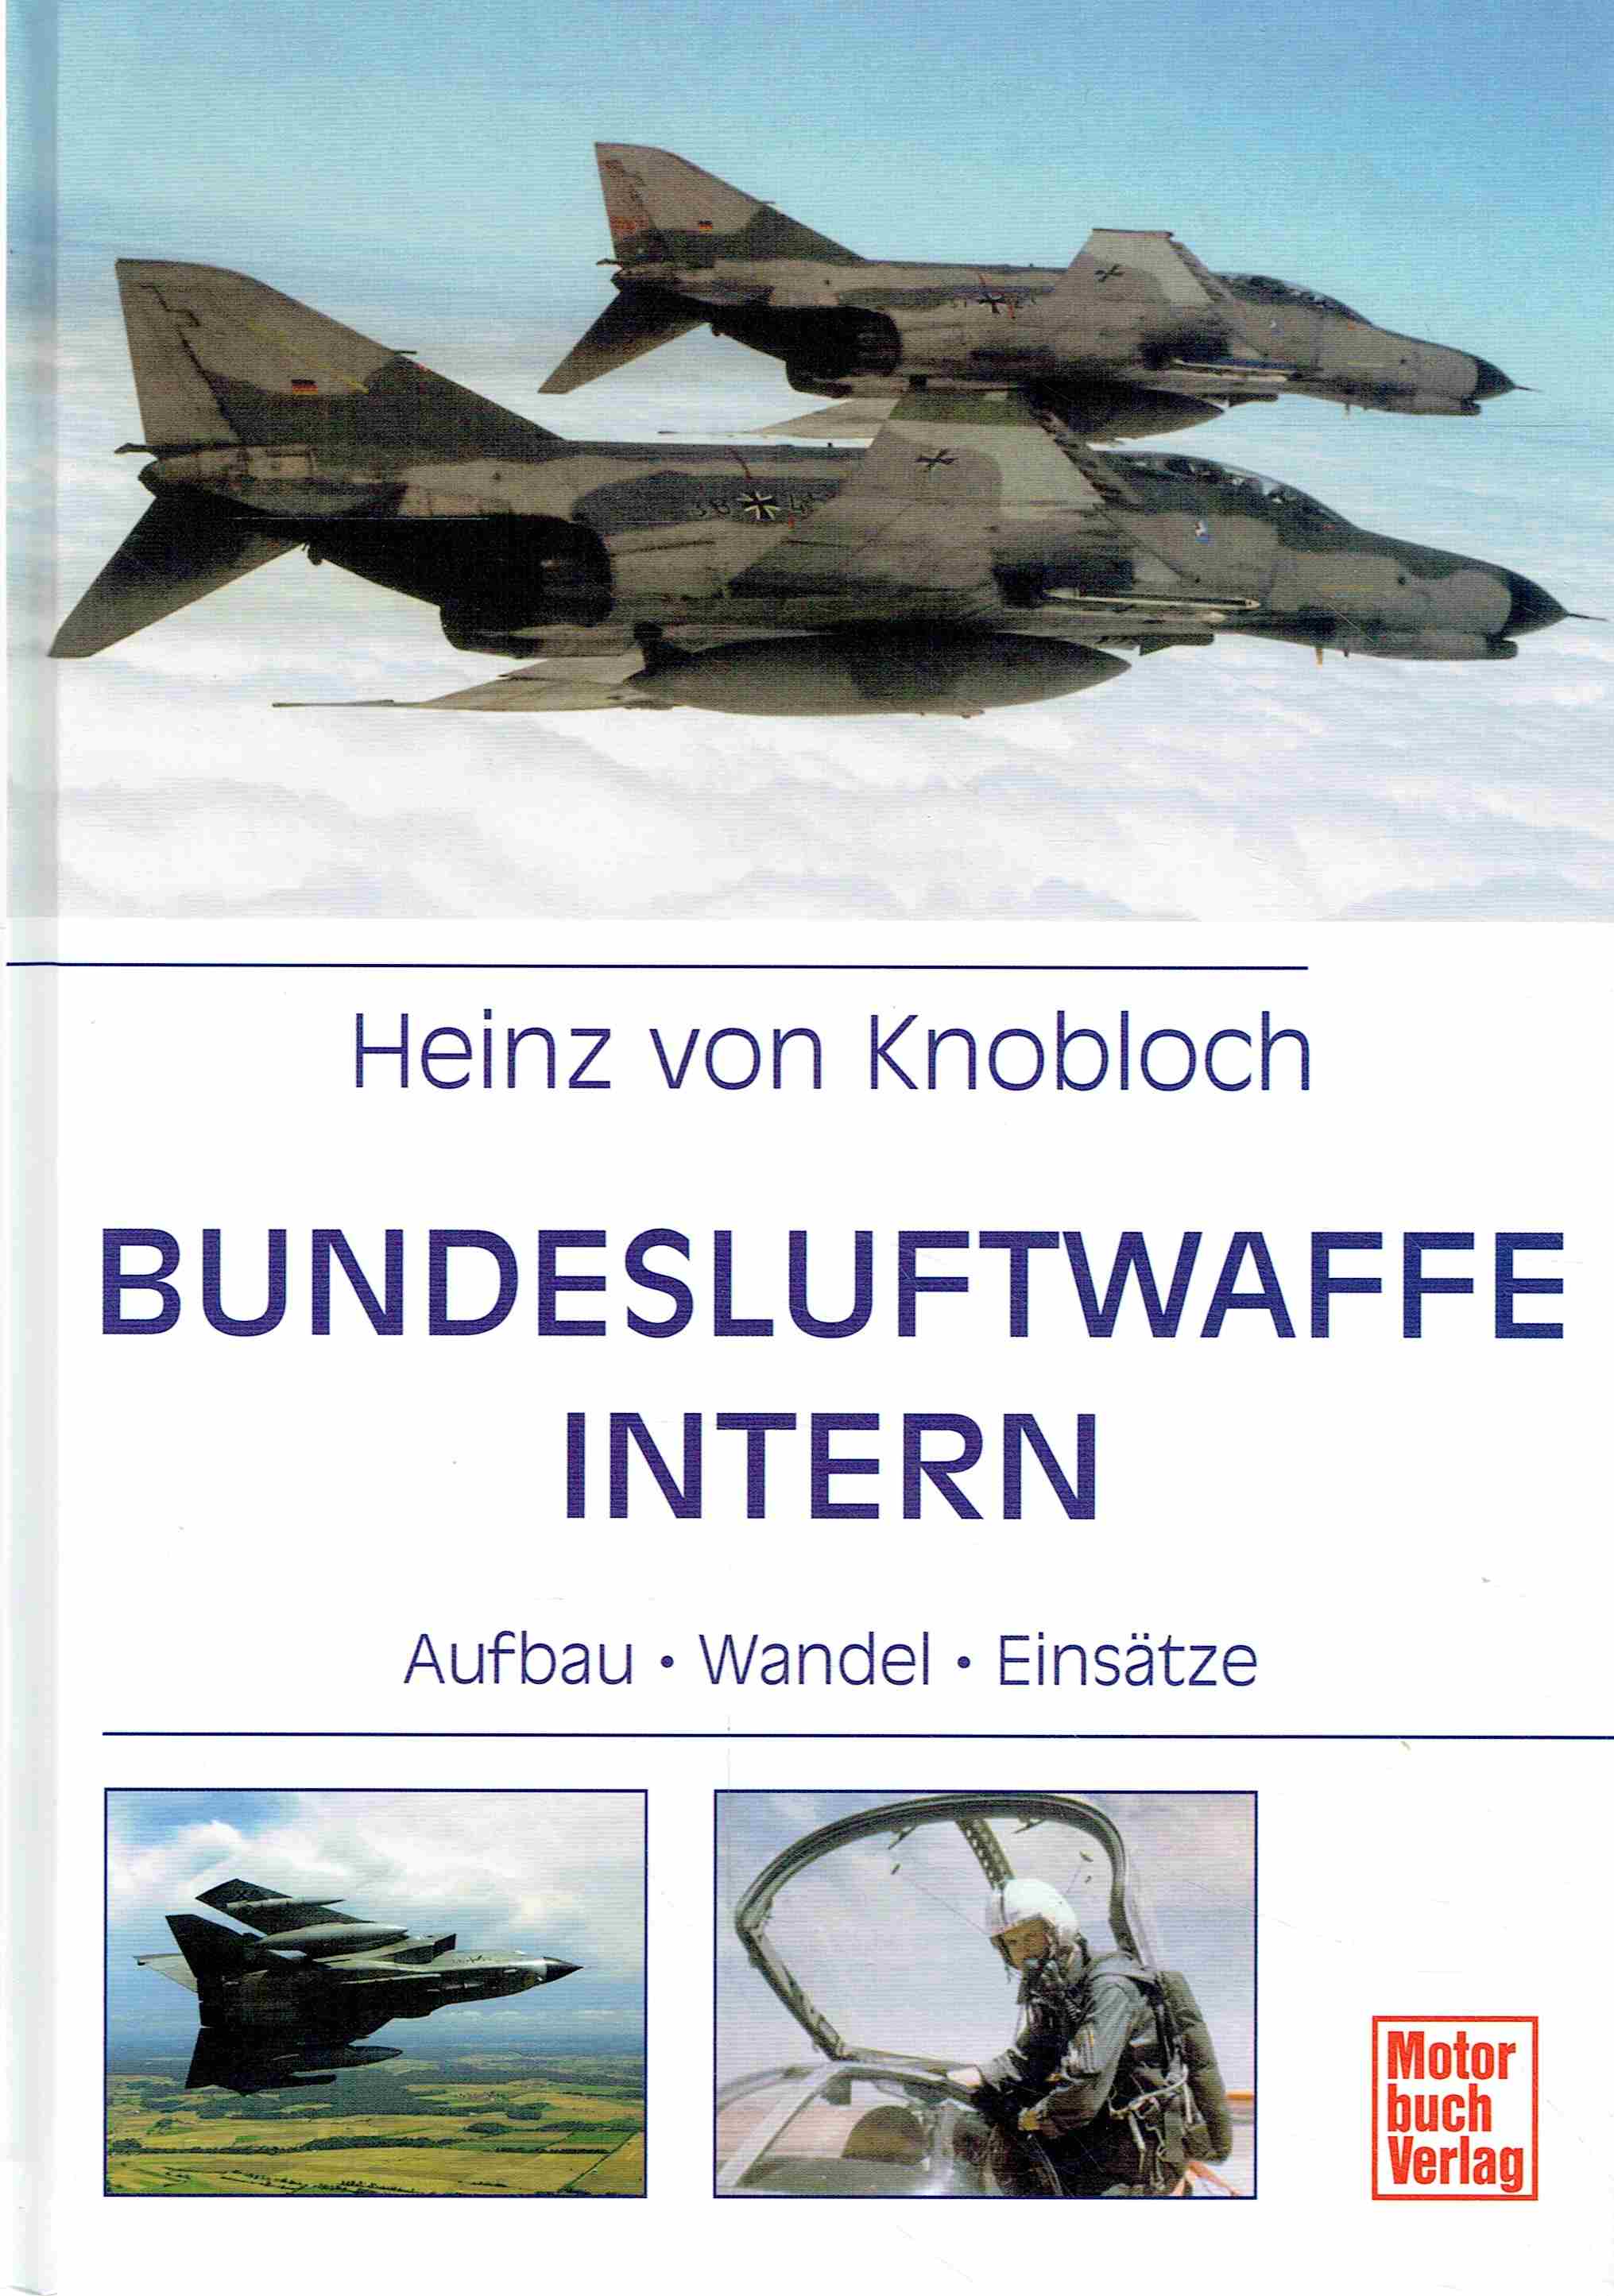 Bundesluftwaffe intern: Aufbau - Wandel - Einsätze. - Heinz von Knobloch